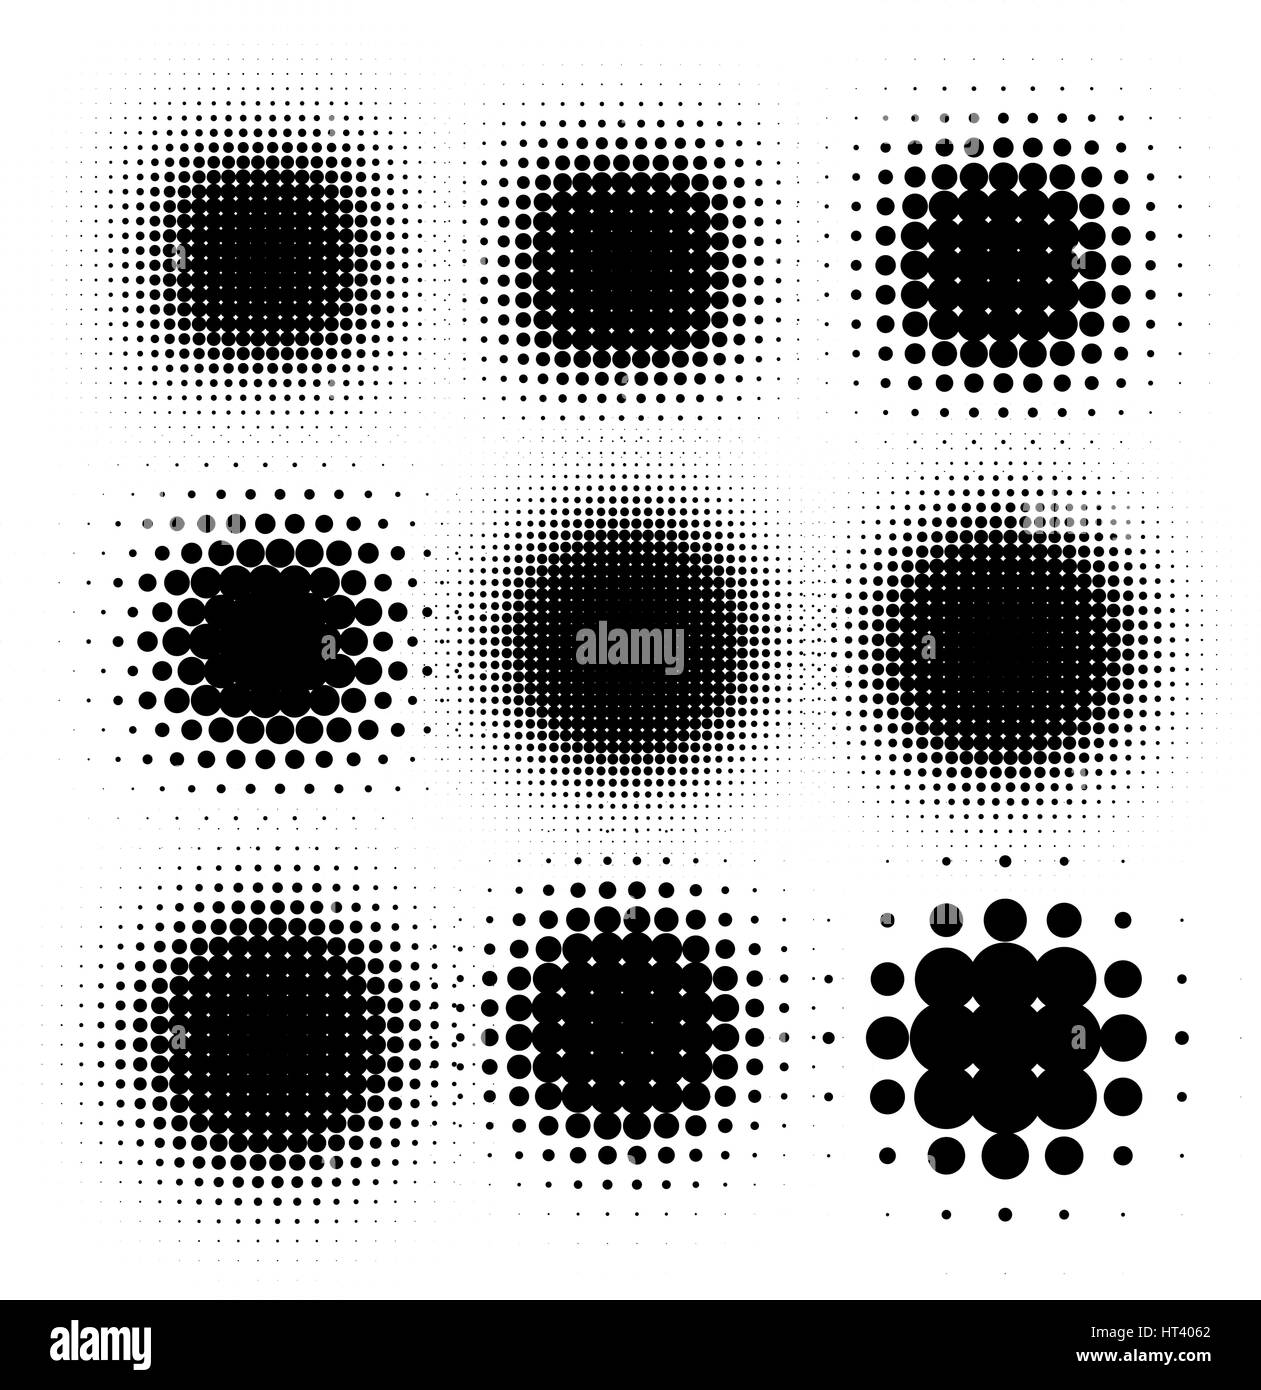 Color negro aislado forma redonda abstract halftone dotted logo set, puntos elementos decorativos colección ilustración vectorial Ilustración del Vector